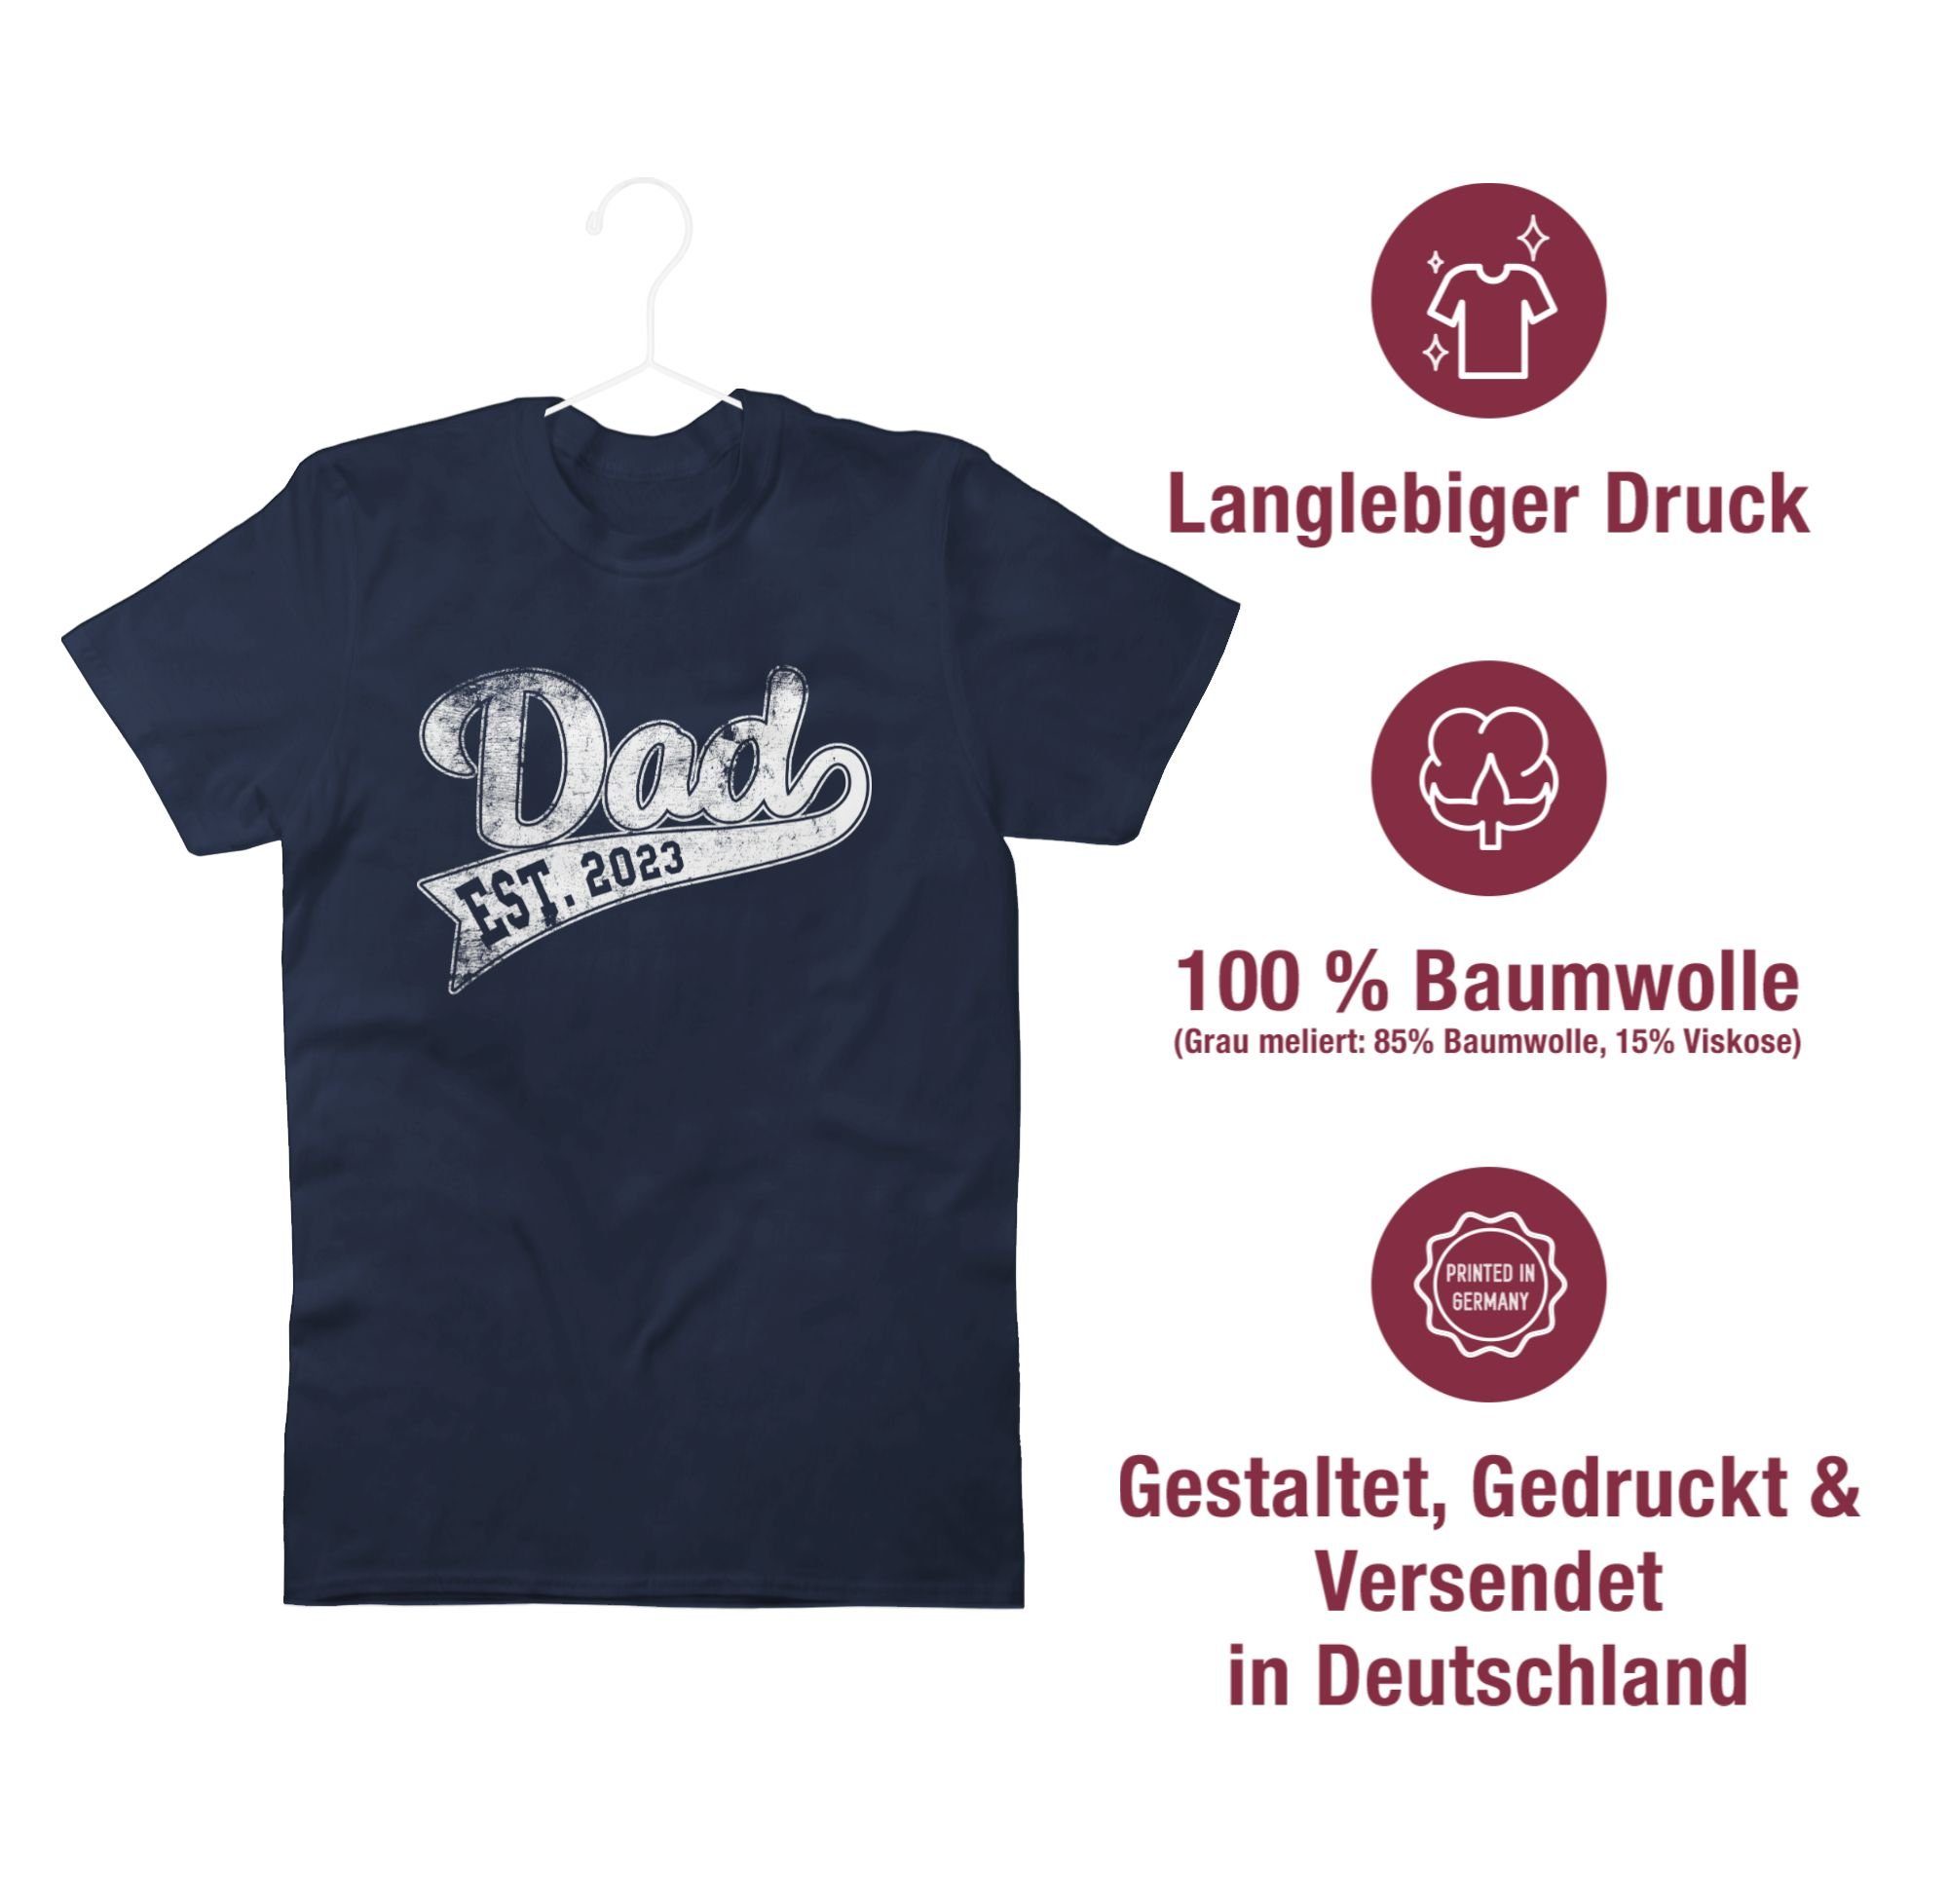 Shirtracer T-Shirt Dad Est. Geschenk 2023 für Vatertag Papa Blau Papa Navy 03 Werdender I